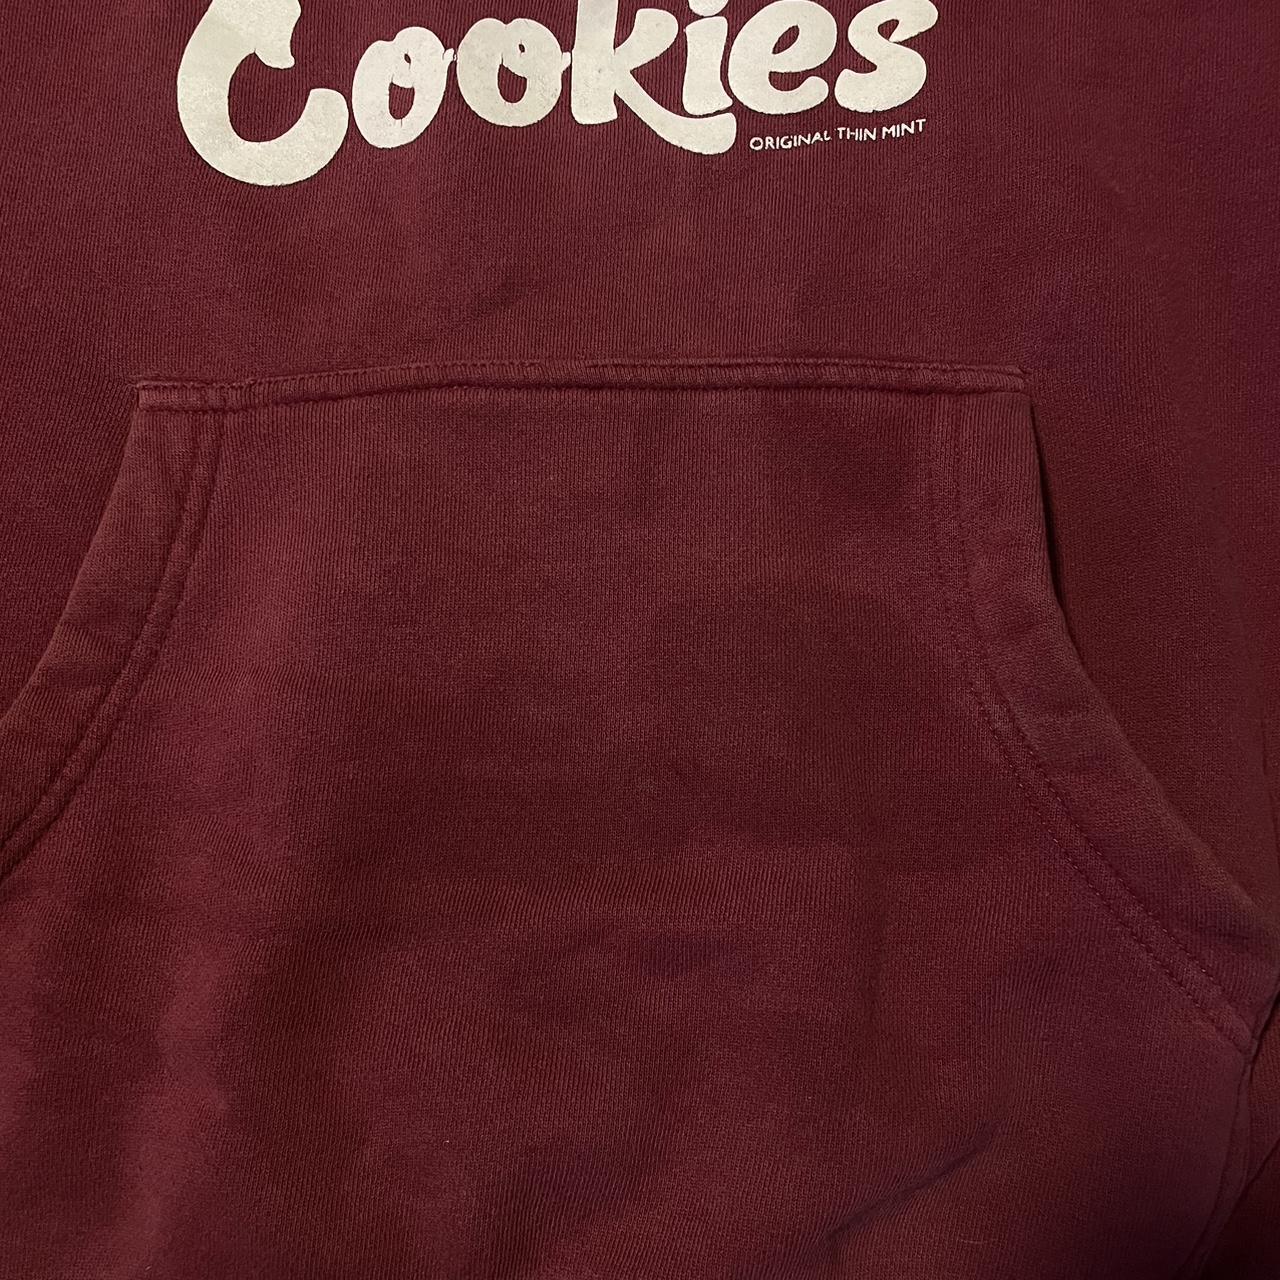 Medium Cookies Hoodie 💫💥 Kind of a big stain in - Depop